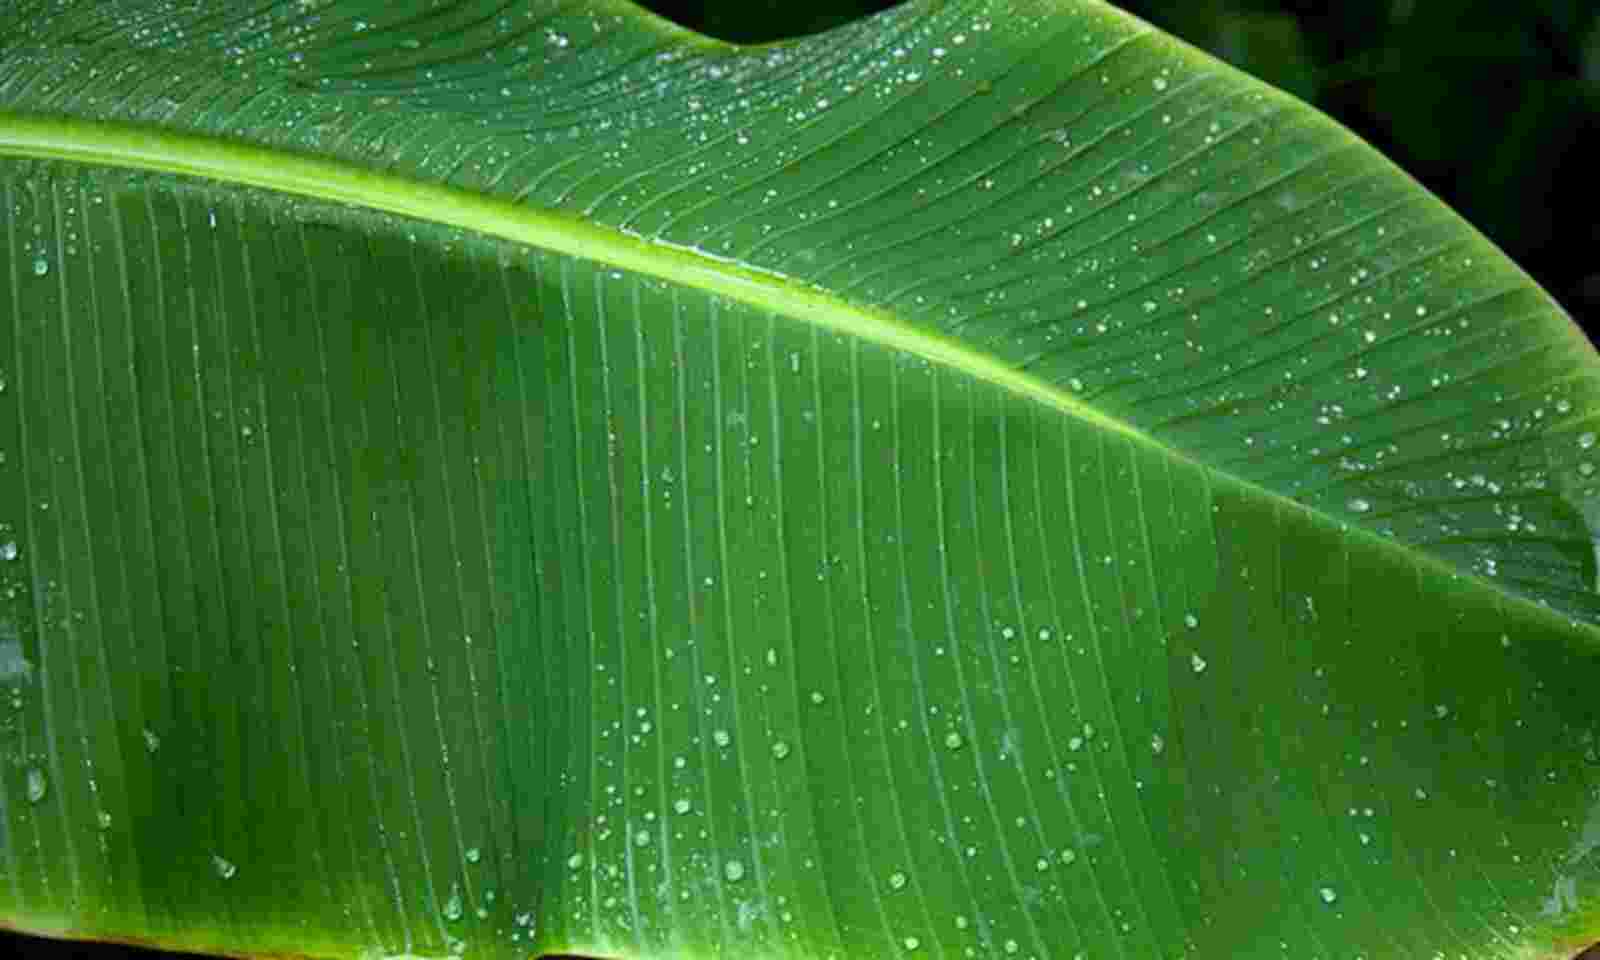  banana leaf story in tamil